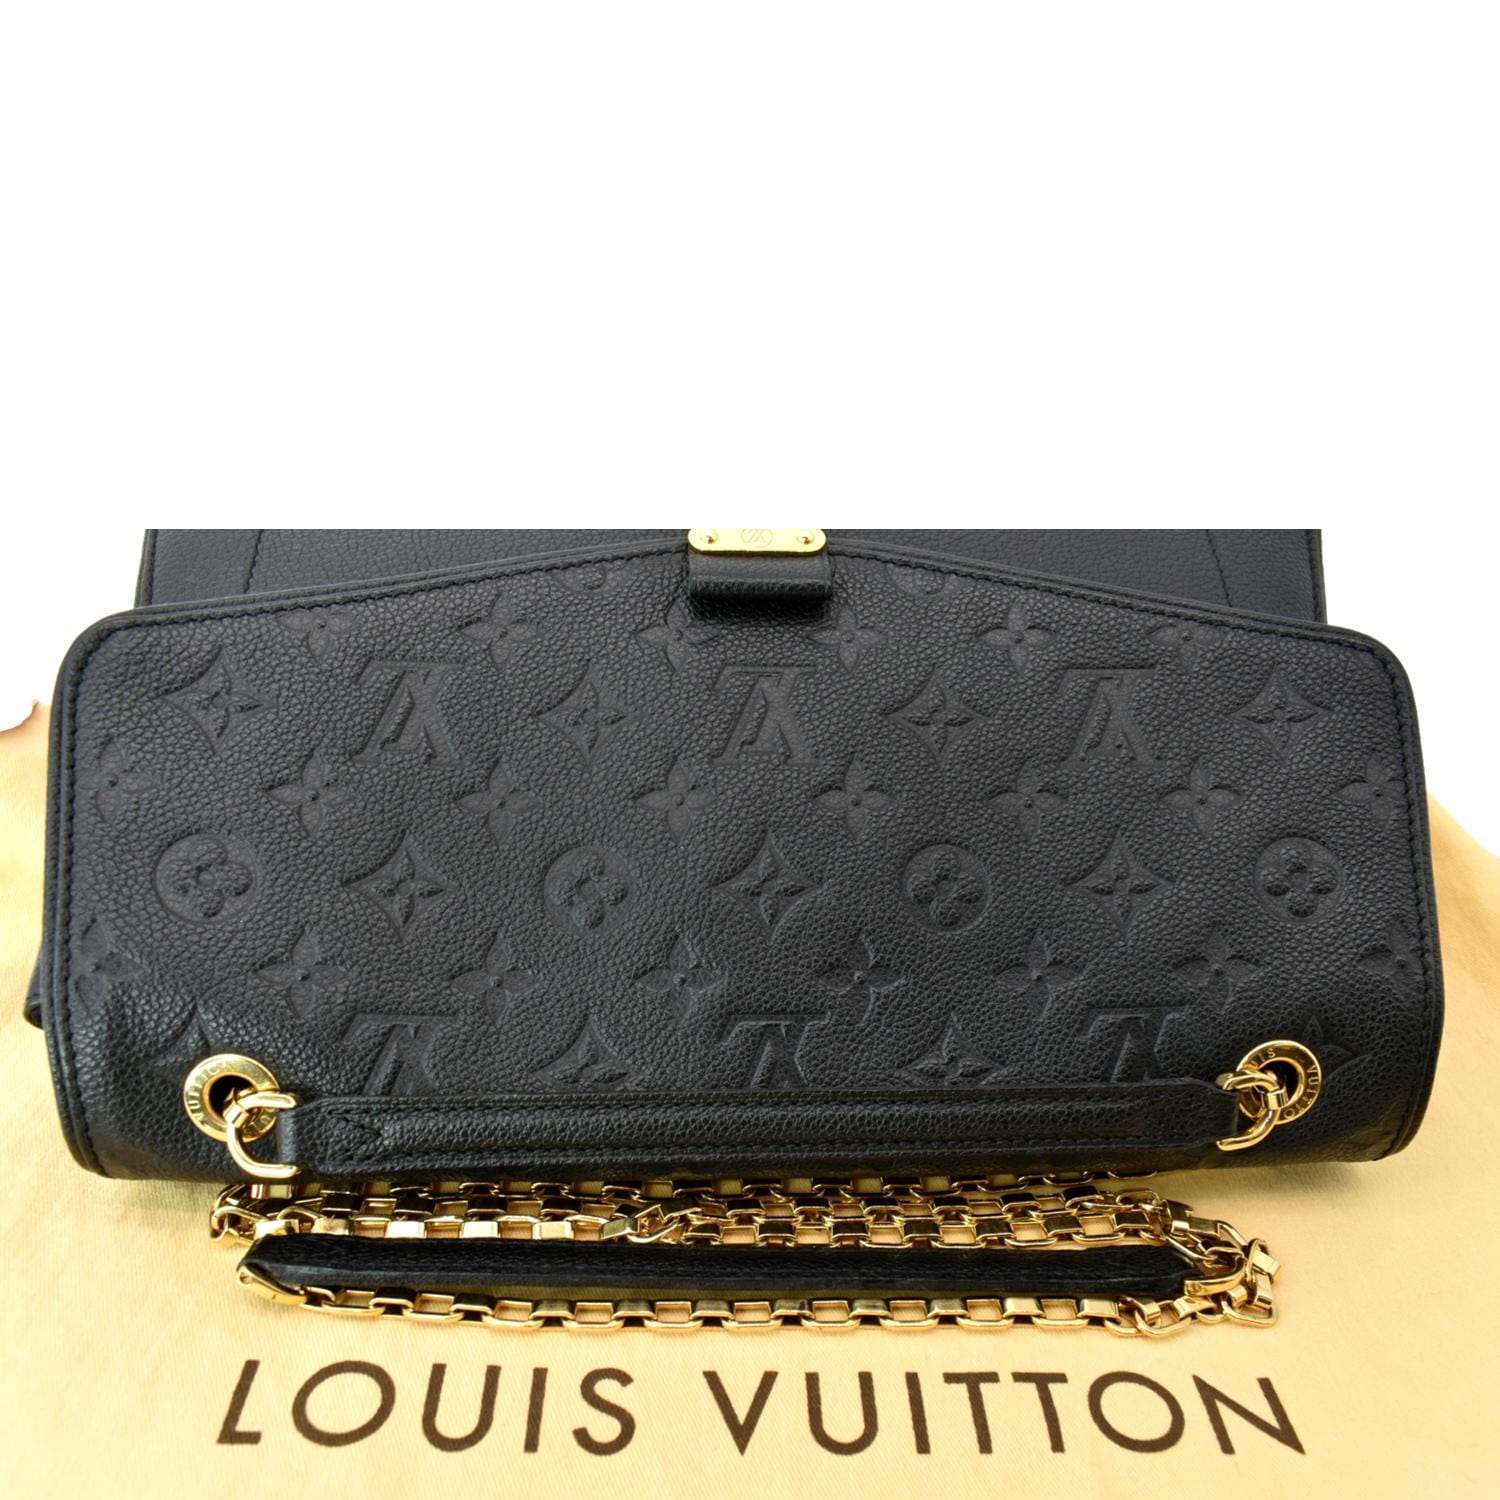 LOUIS VUITTON Louis Vuitton Monogram Implant Saint-Germain PM Dune M48932  Women's Shoulder Bag